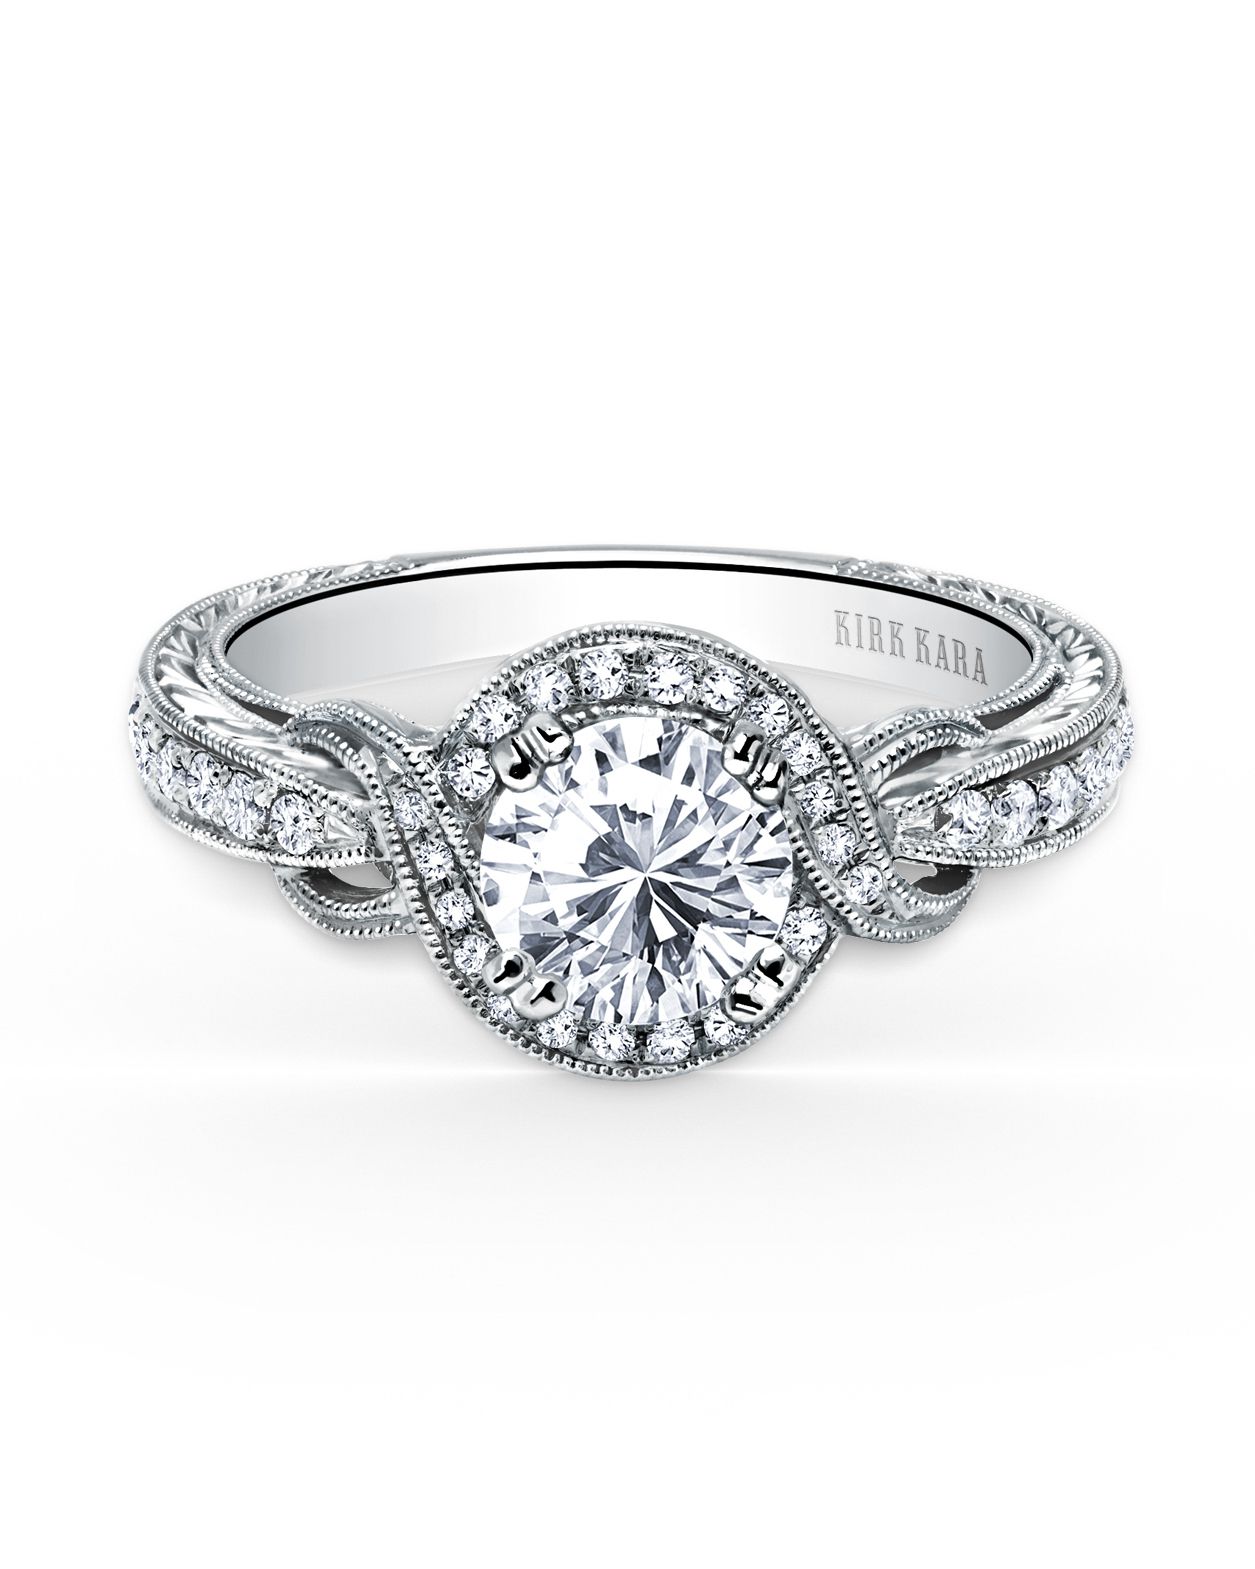 kirk-kara-white-gold-round-cut-engagement-ring-two-0816.jpg